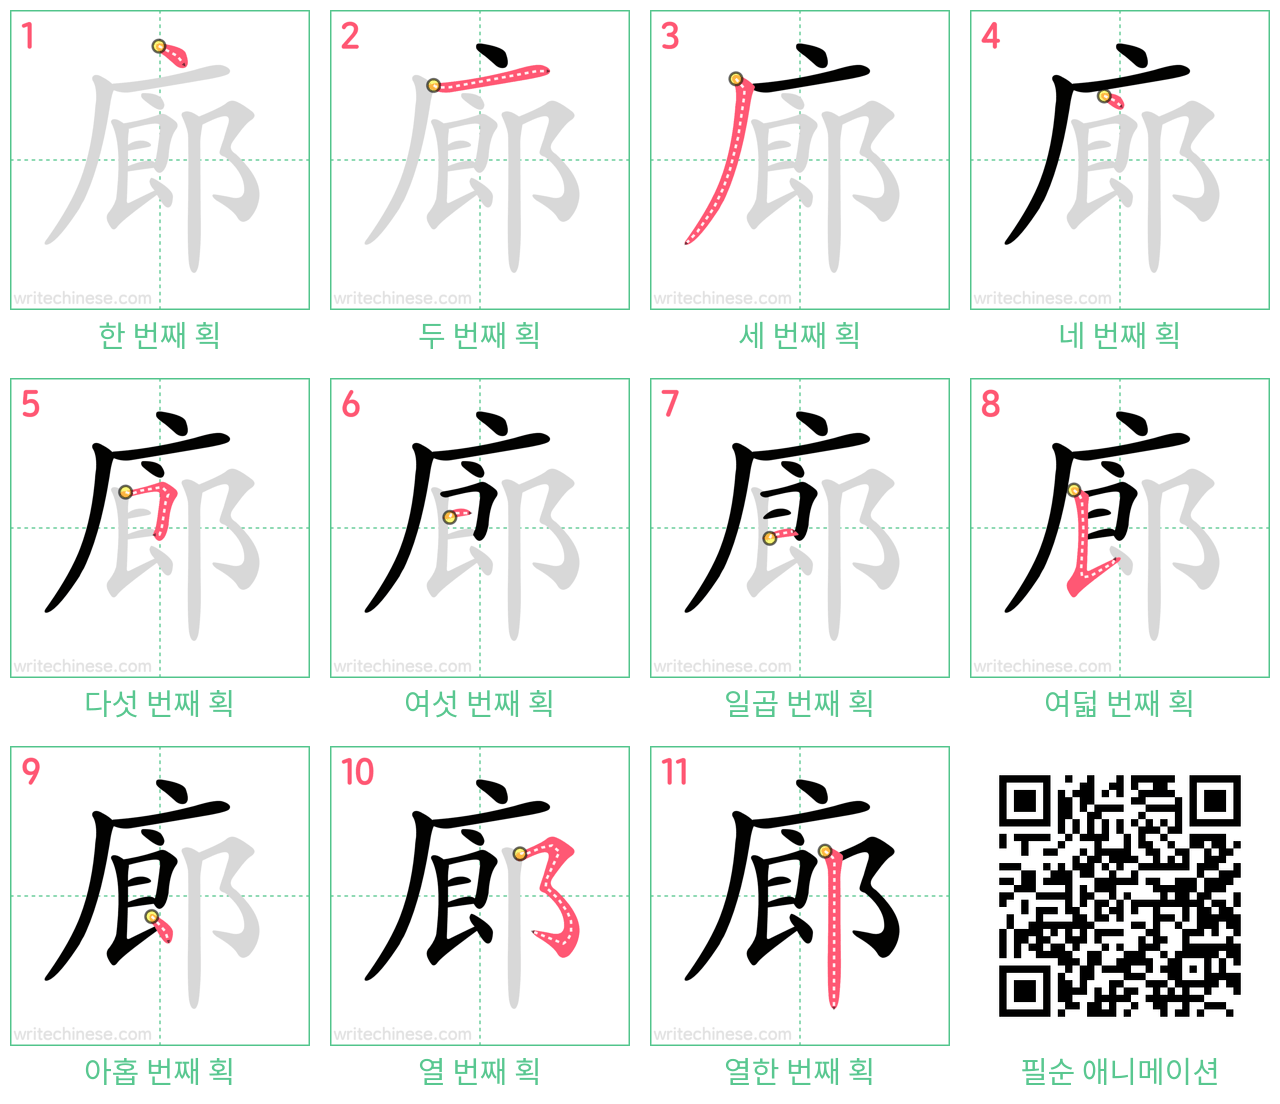 廊 step-by-step stroke order diagrams